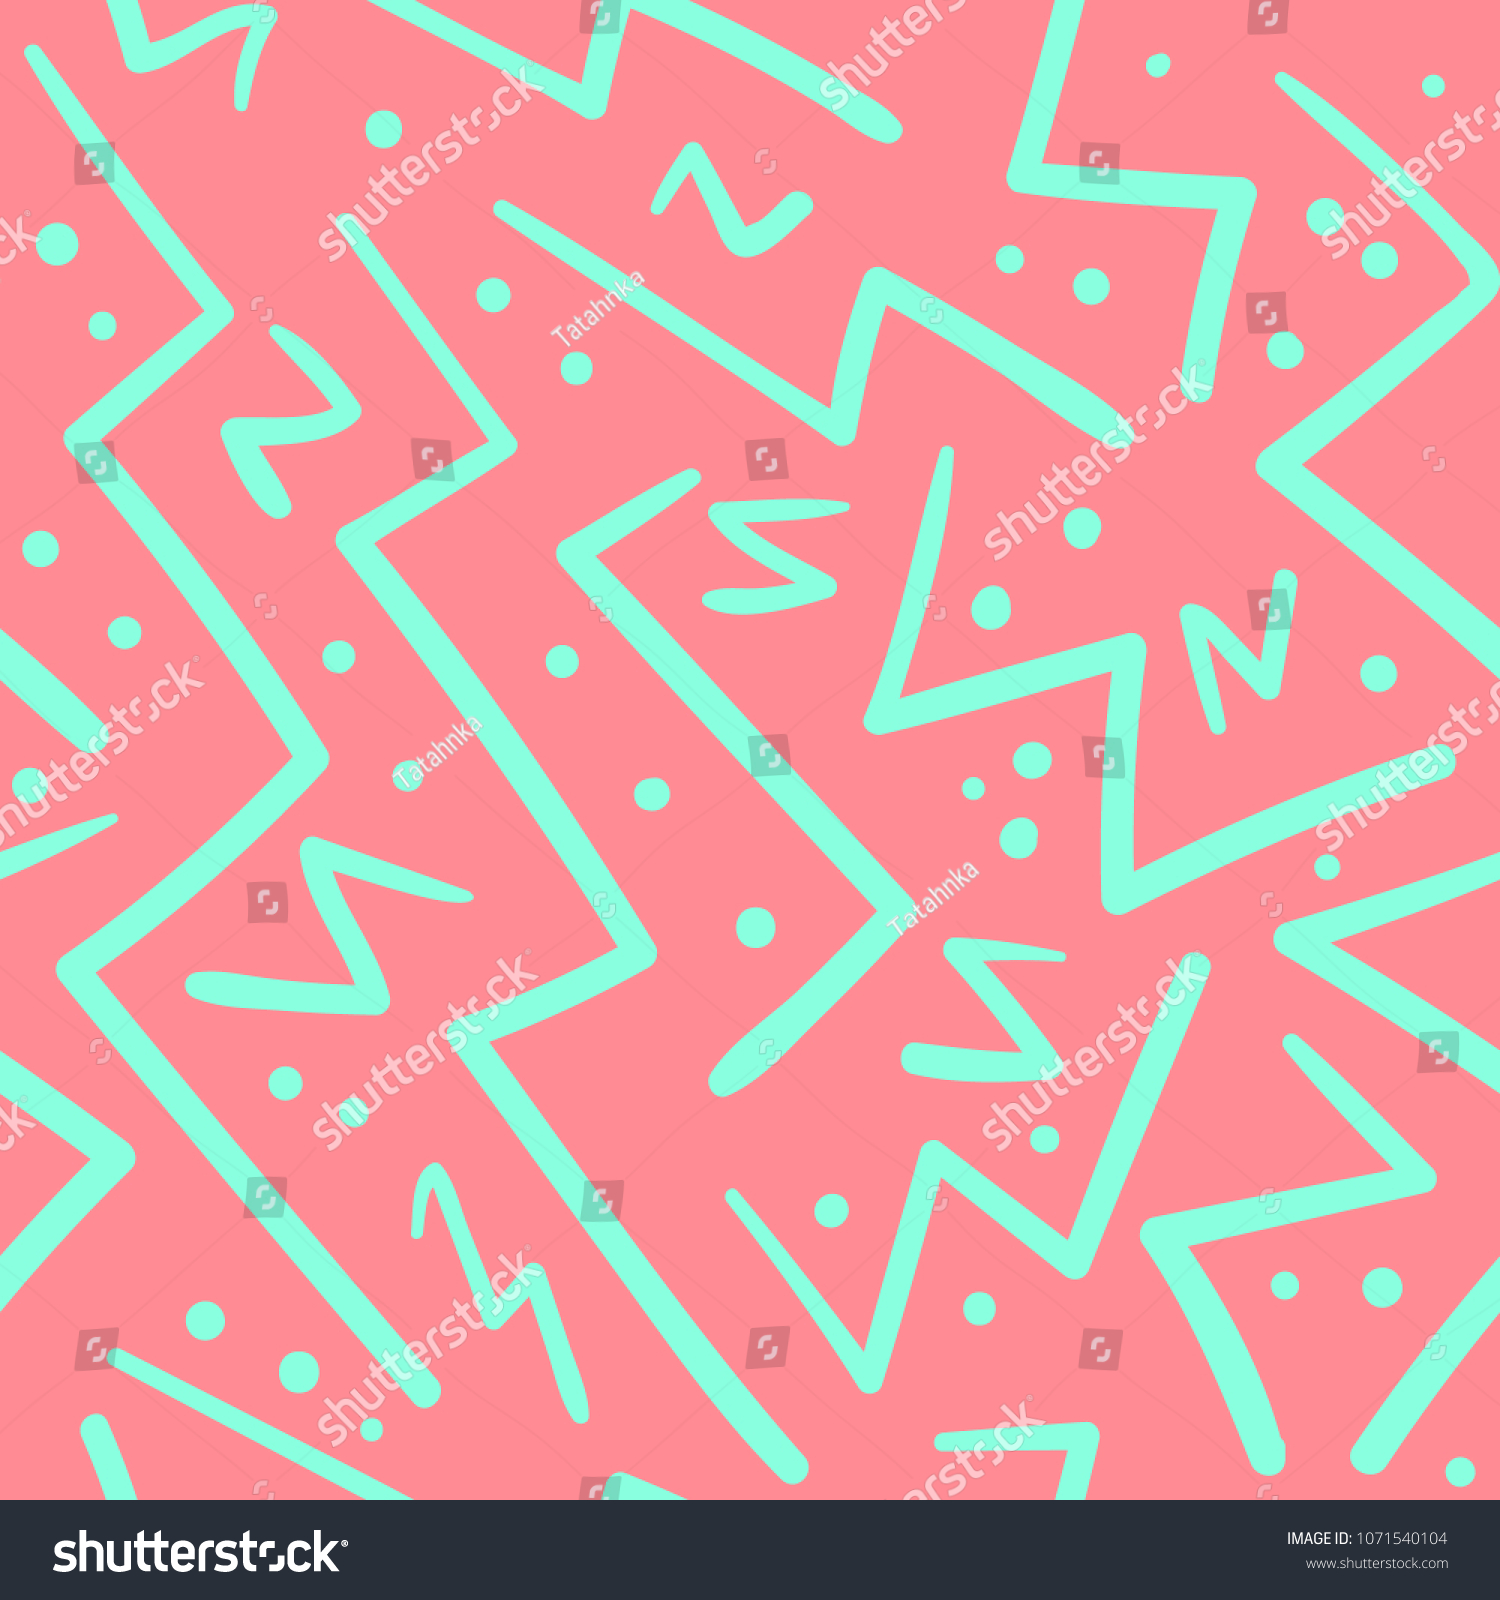 サイケデリック なカオスのピンクと緑のジグザグ ドットシームレスな模様 織物 包み紙 表面 背景に手描きのジグザグ線と抽象的なファッショントレンディベクターテクスチャー のベクター画像 素材 ロイヤリティフリー